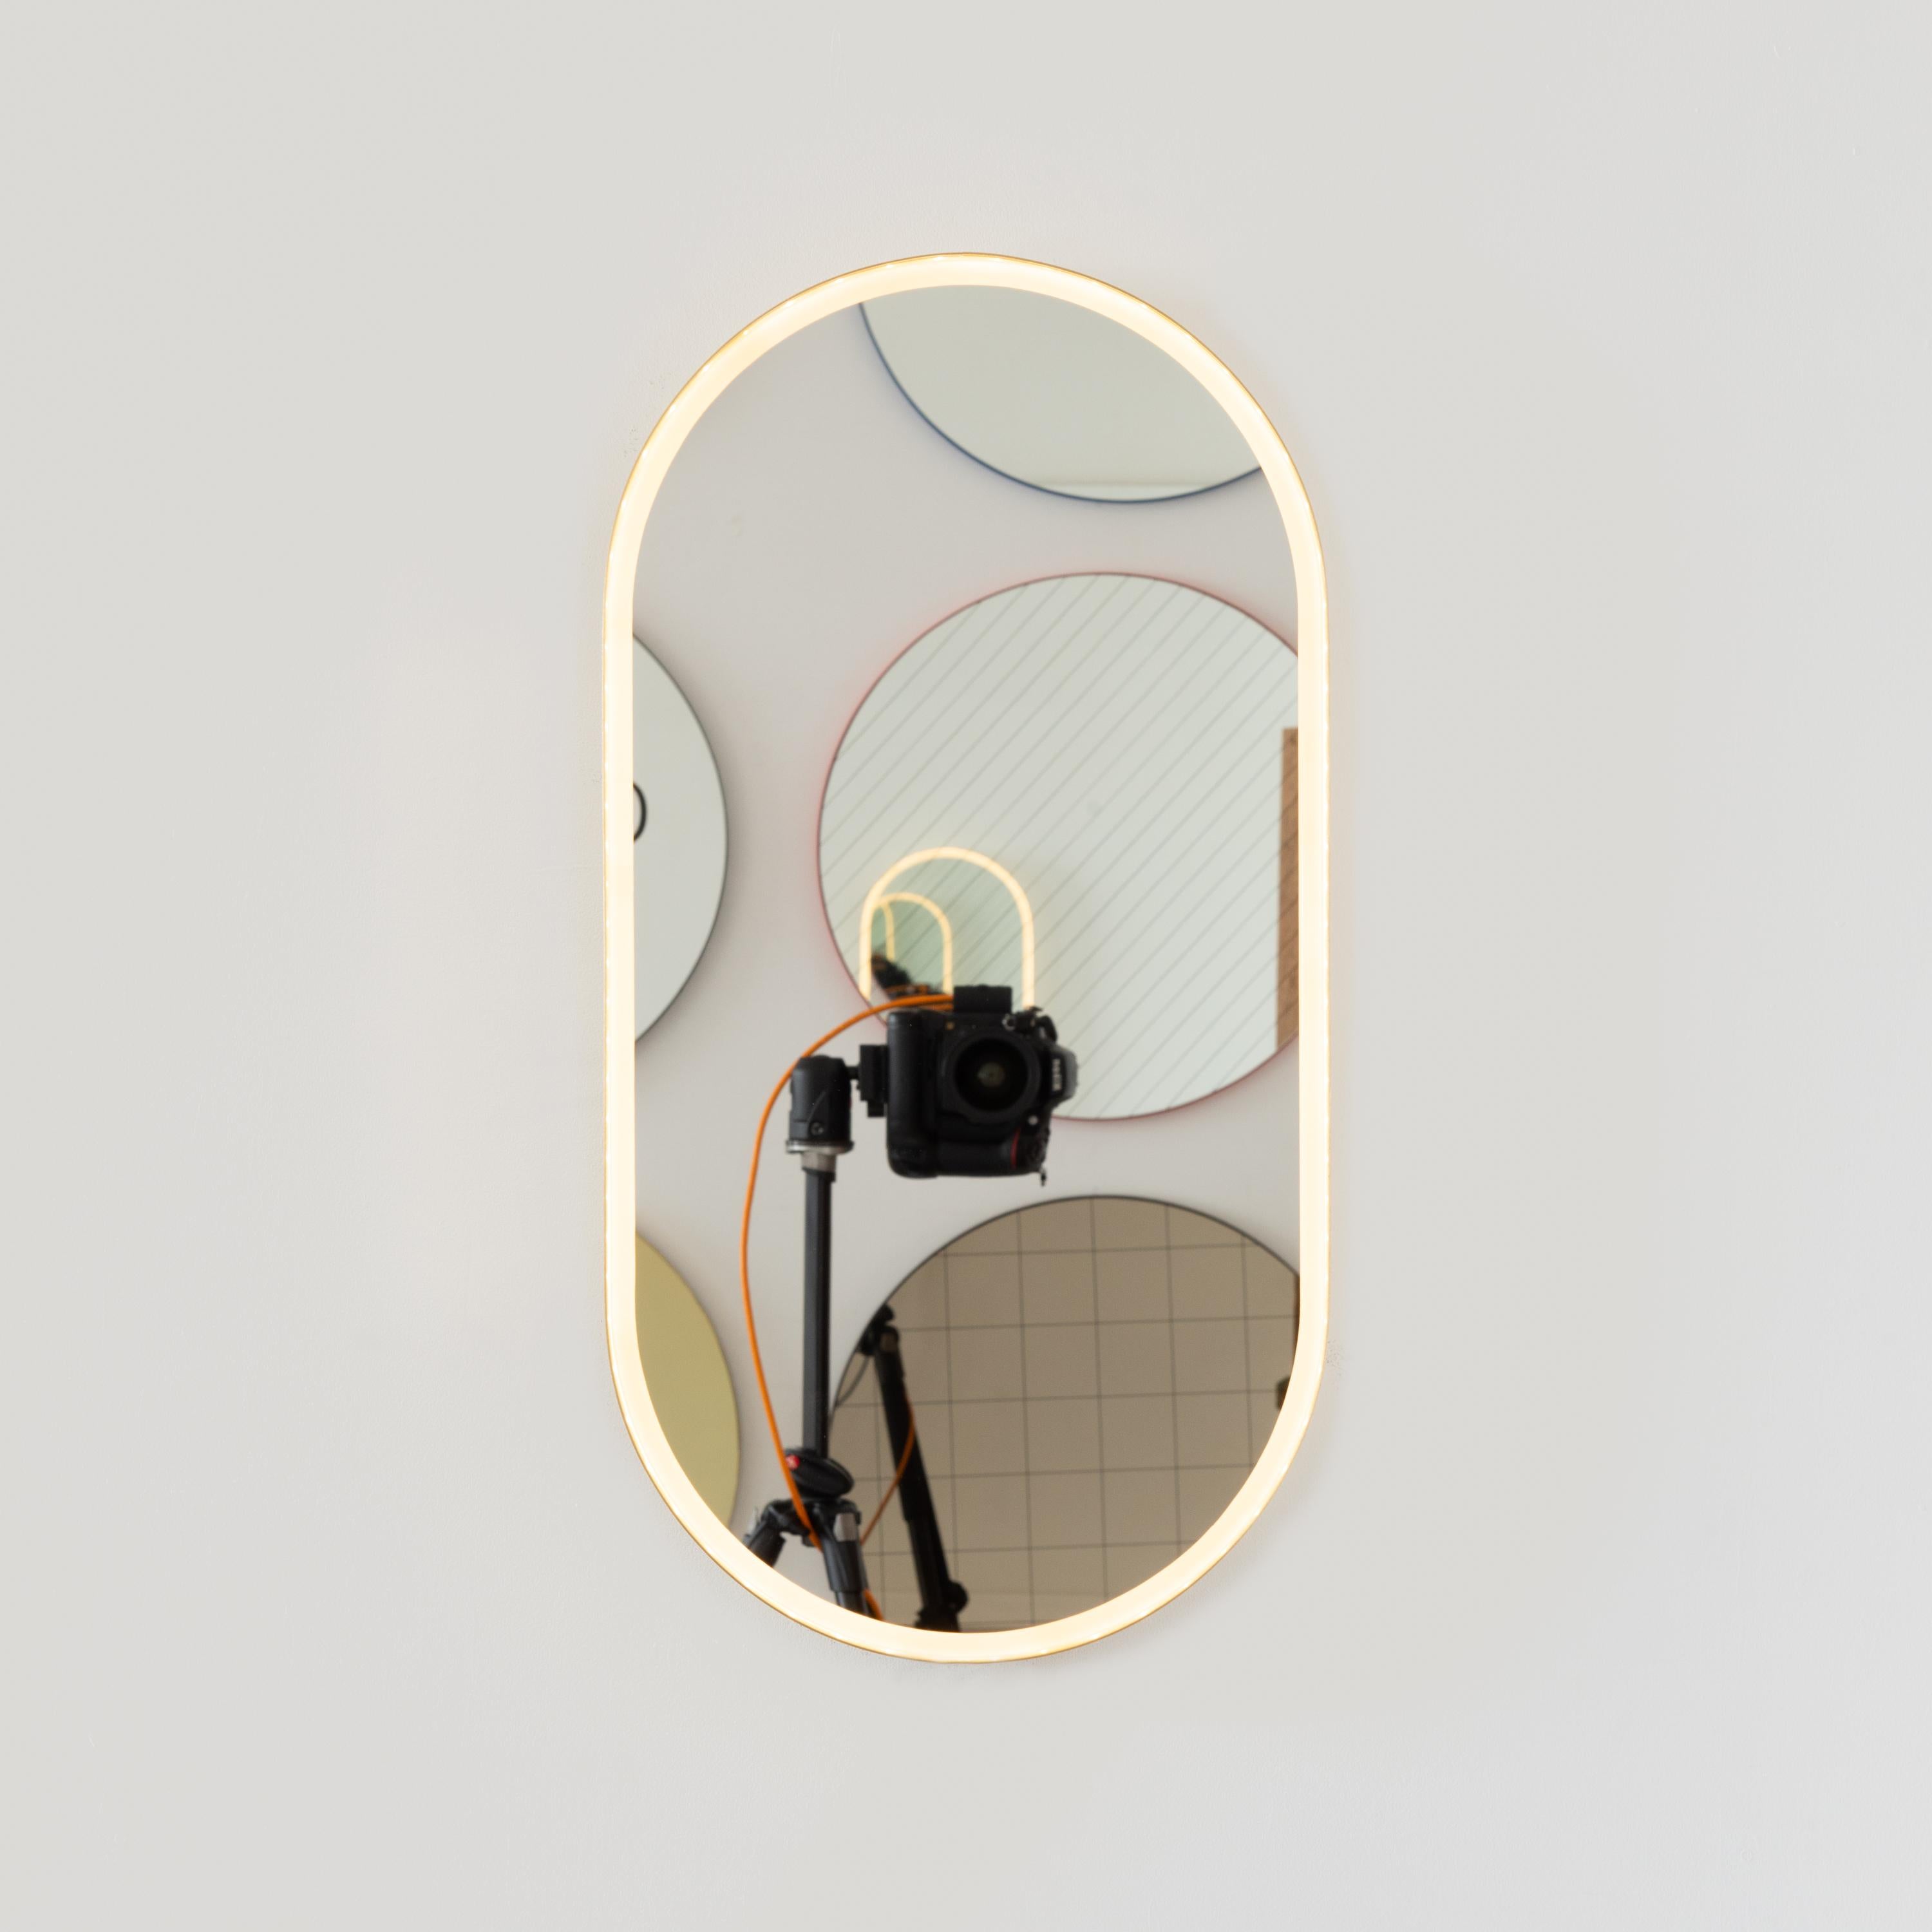 Moderner, handgefertigter, von vorne beleuchteter, kapselförmiger Spiegel mit einem eleganten Rahmen aus gebürstetem Messing. Entworfen und handgefertigt in London, UK.

Die mittelgroßen, großen und extragroßen Spiegel (37 cm x 56 cm, 46 cm x 71 cm